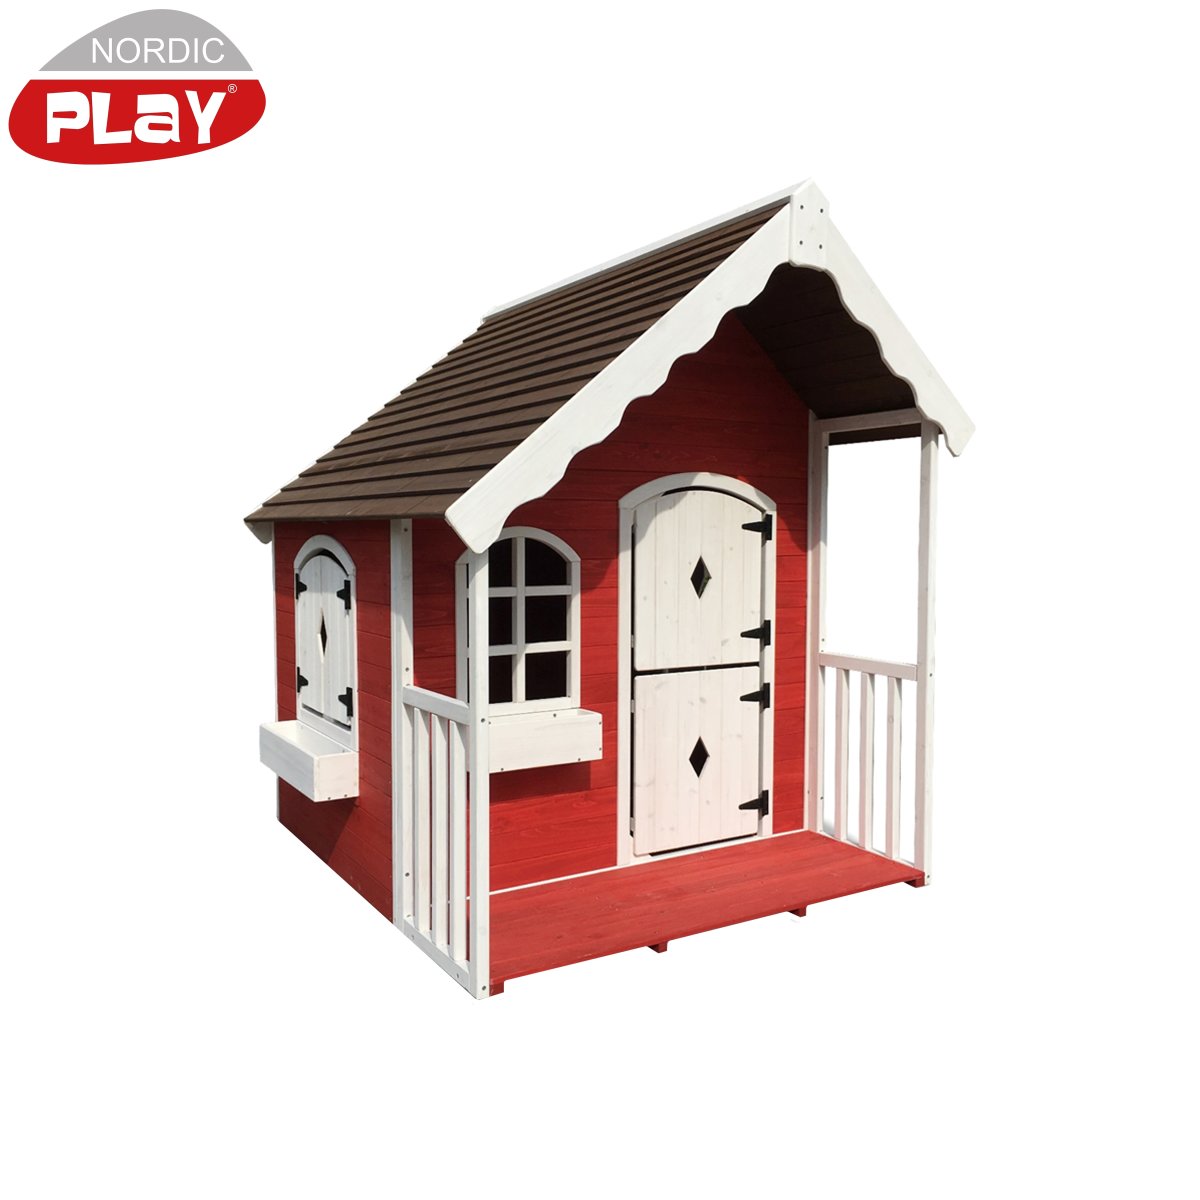 NORDIC PLAY Legehus med veranda rød/hvid